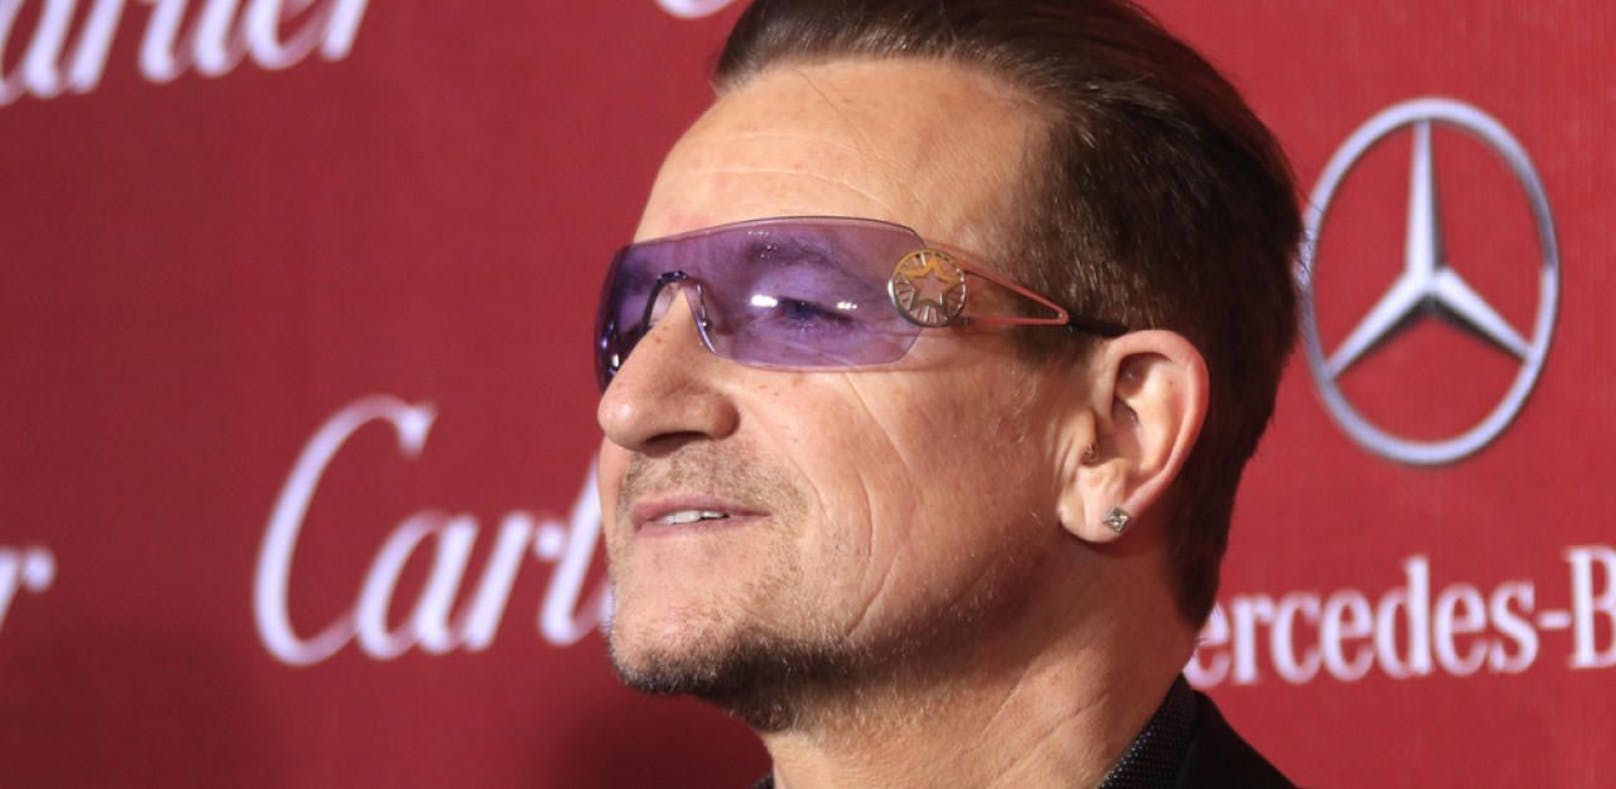 Bono vermisst "männliche Wut" in der Rockmusik